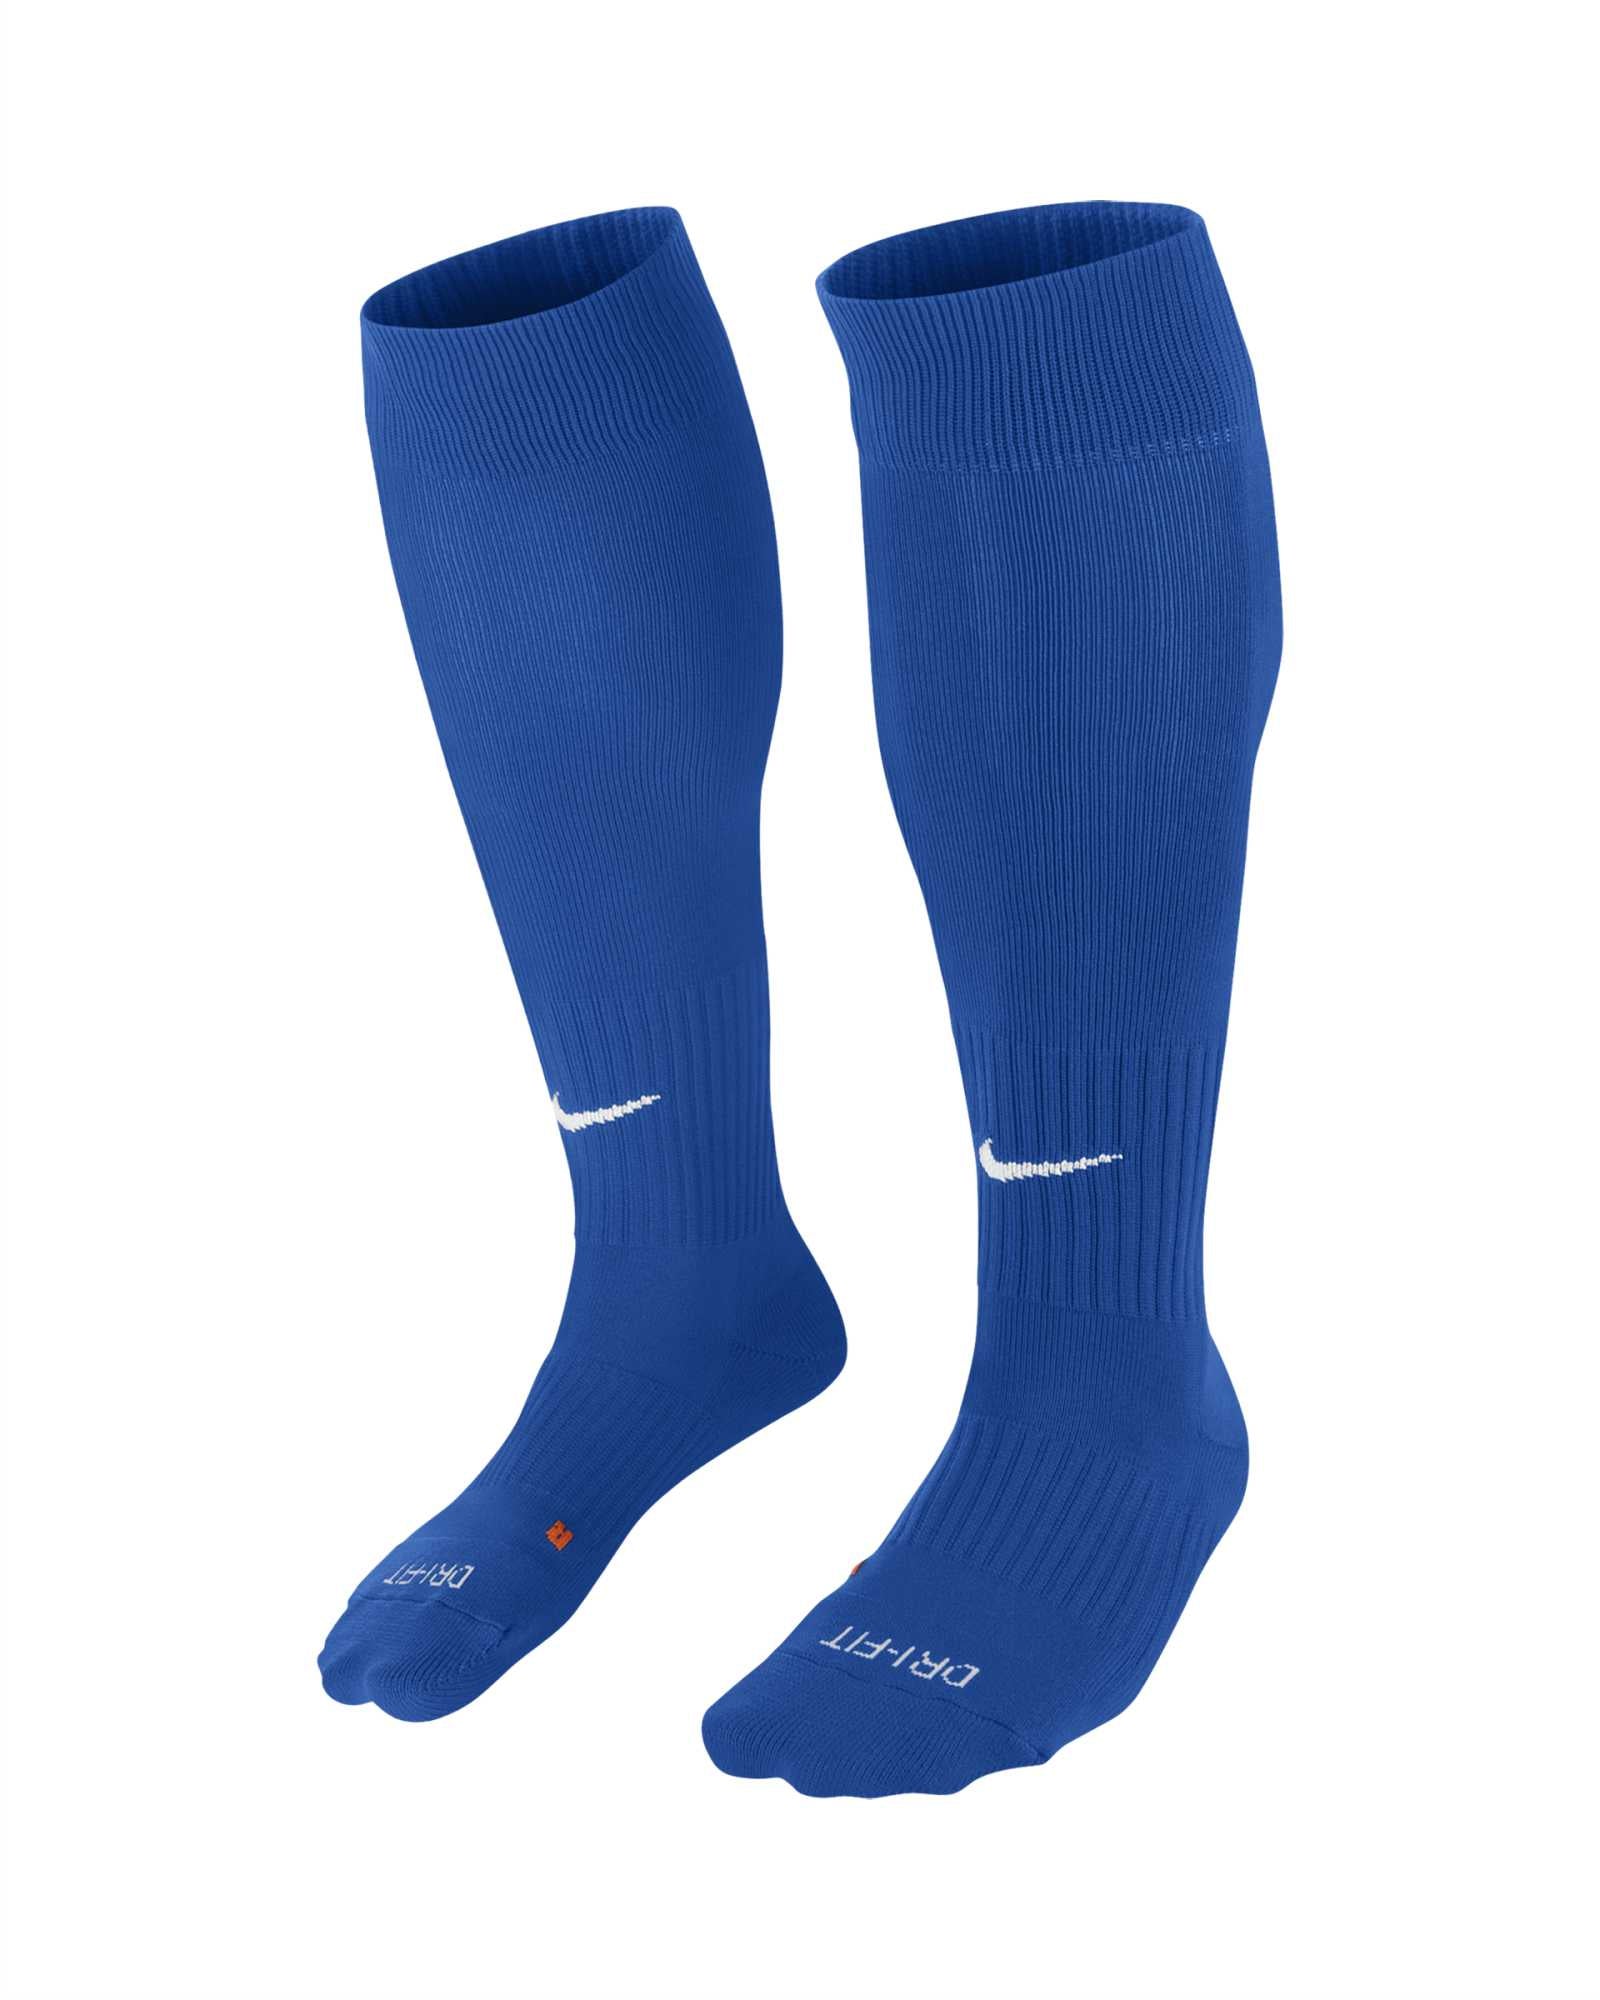 Merley Cobham Home - Nike Classic II Sock